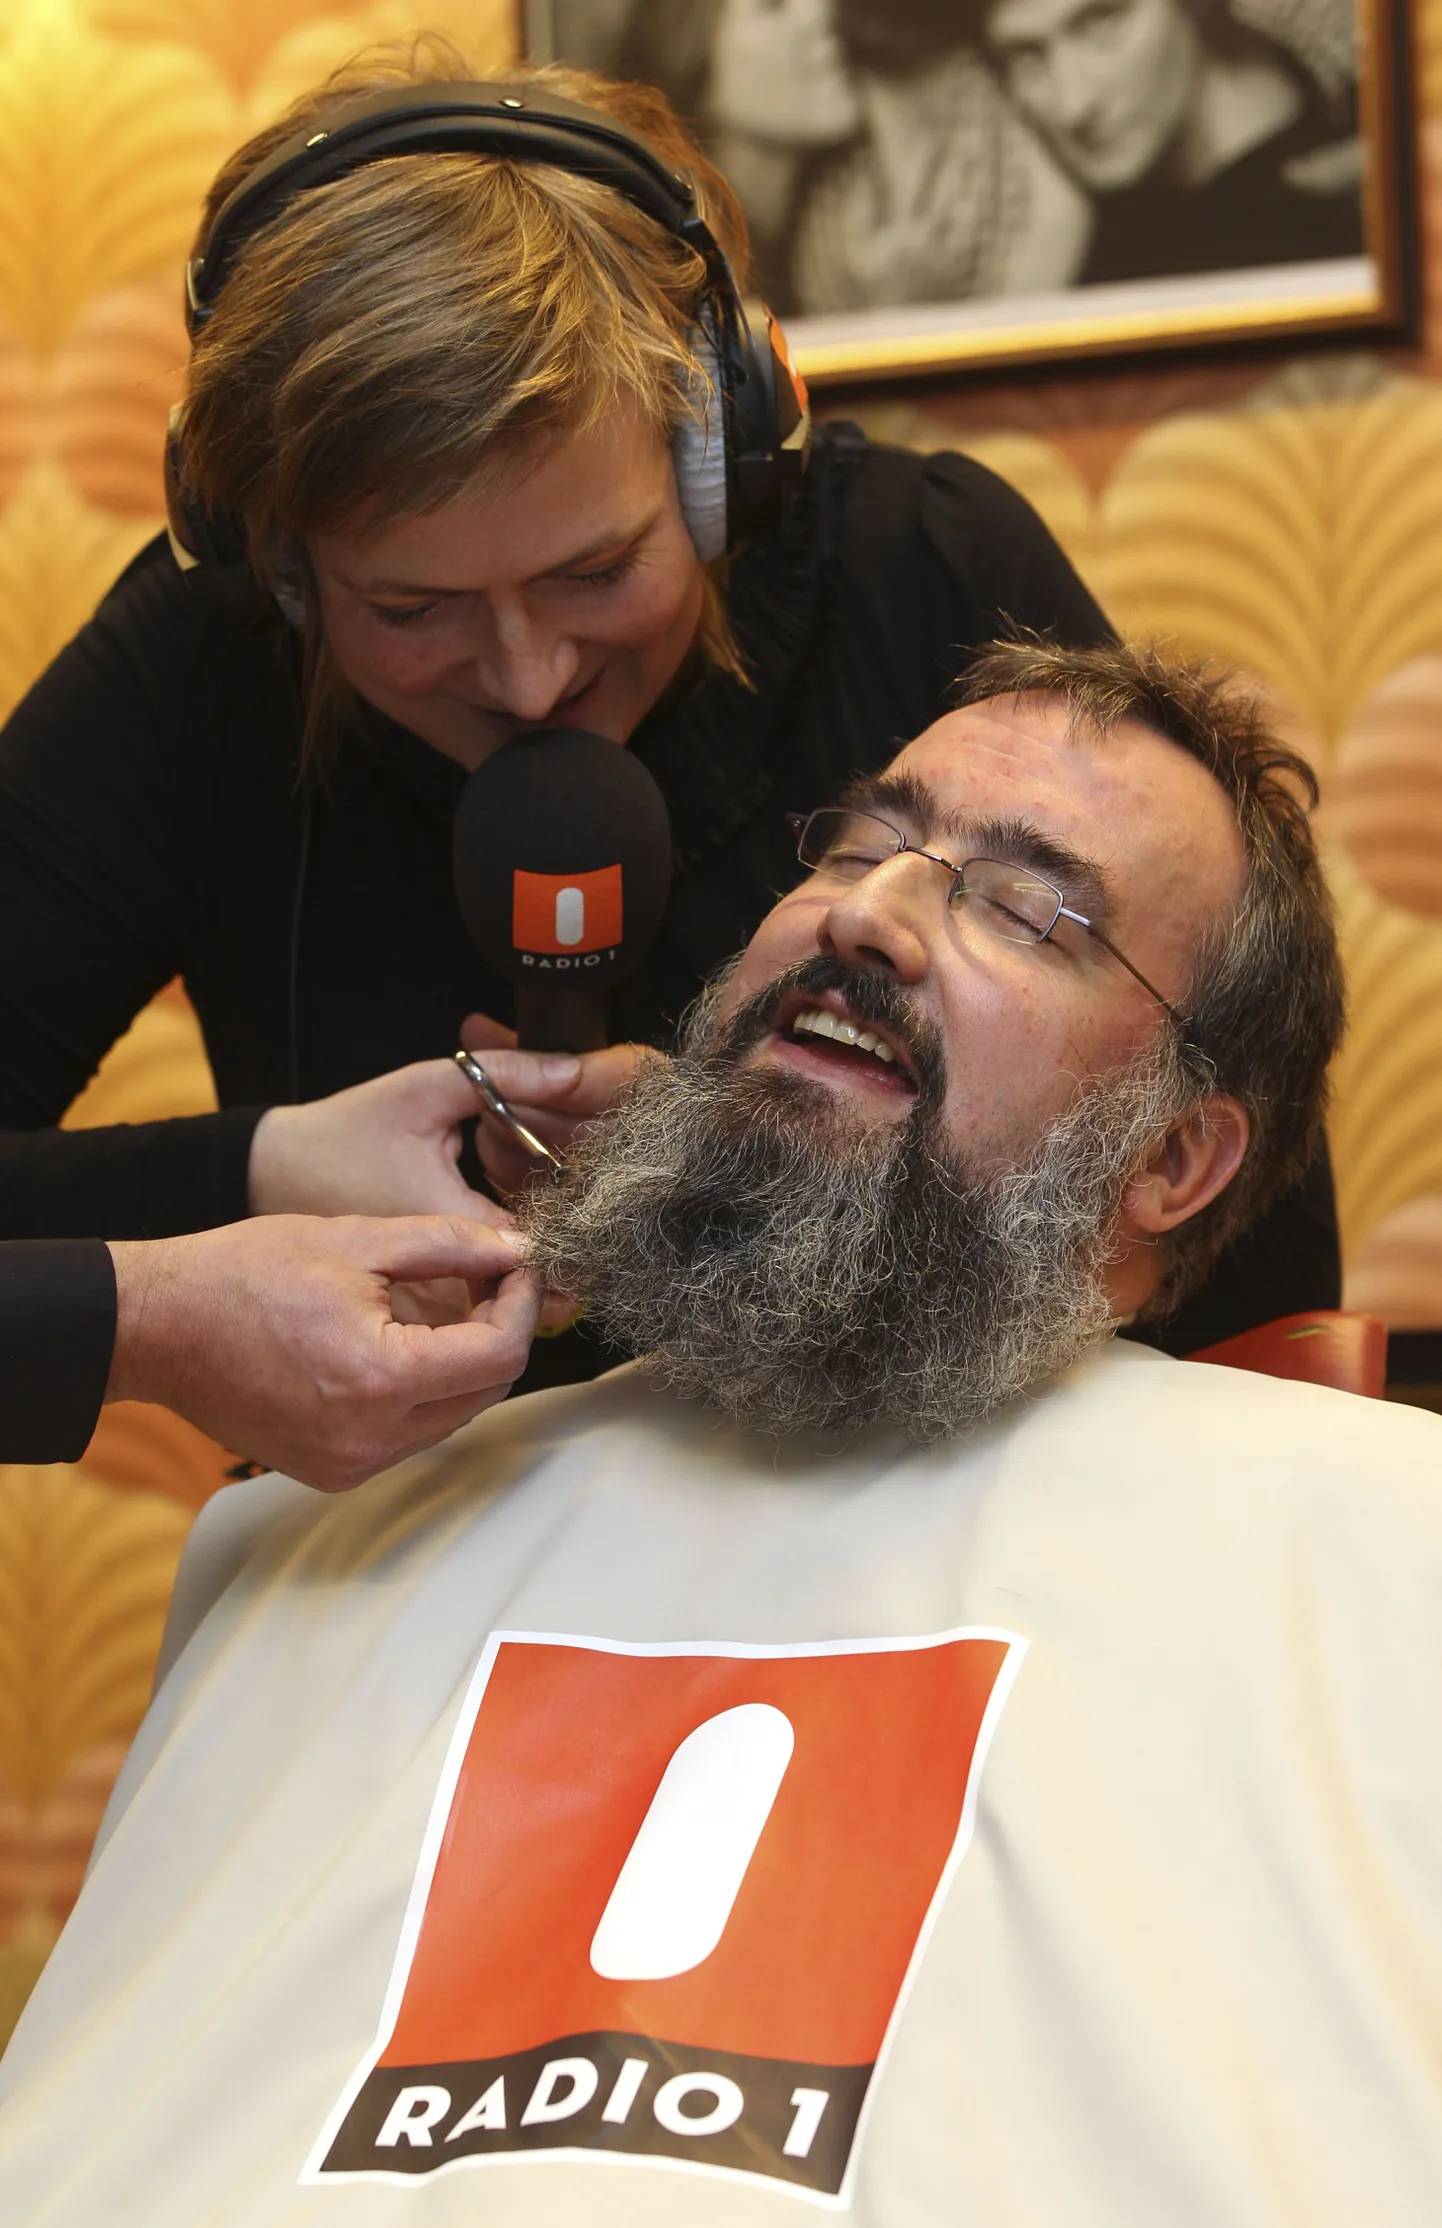 Belgia raadioajakirjanik Ruth Joos kolleeg Joen Filleti 327-päevast habet lõikamas